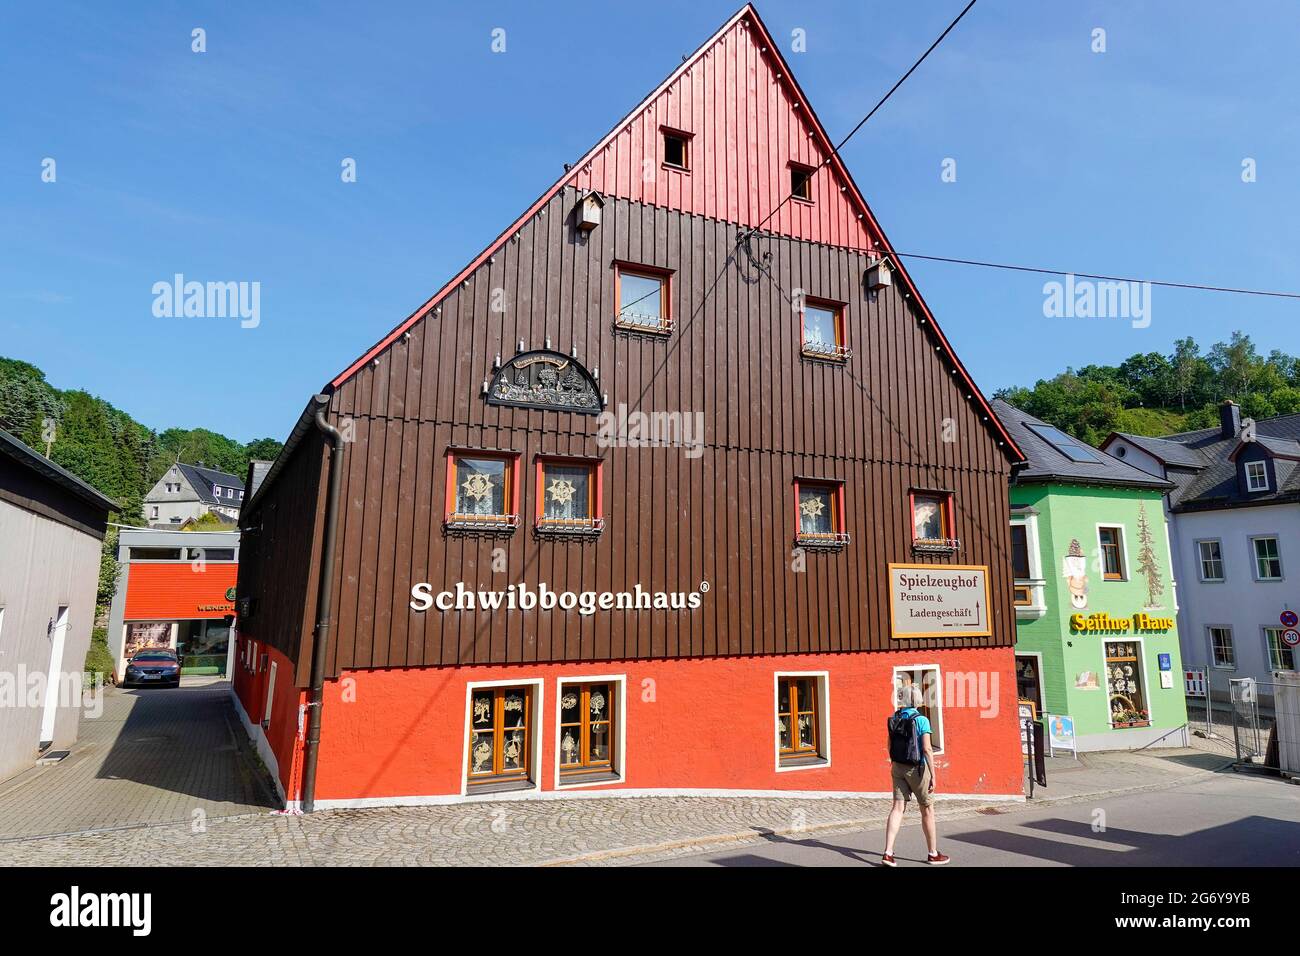 Schwibbogenhaus, Innenstadt, Seiffen, Erzgebirge, Sachsen, Deutschland  Stock Photo - Alamy